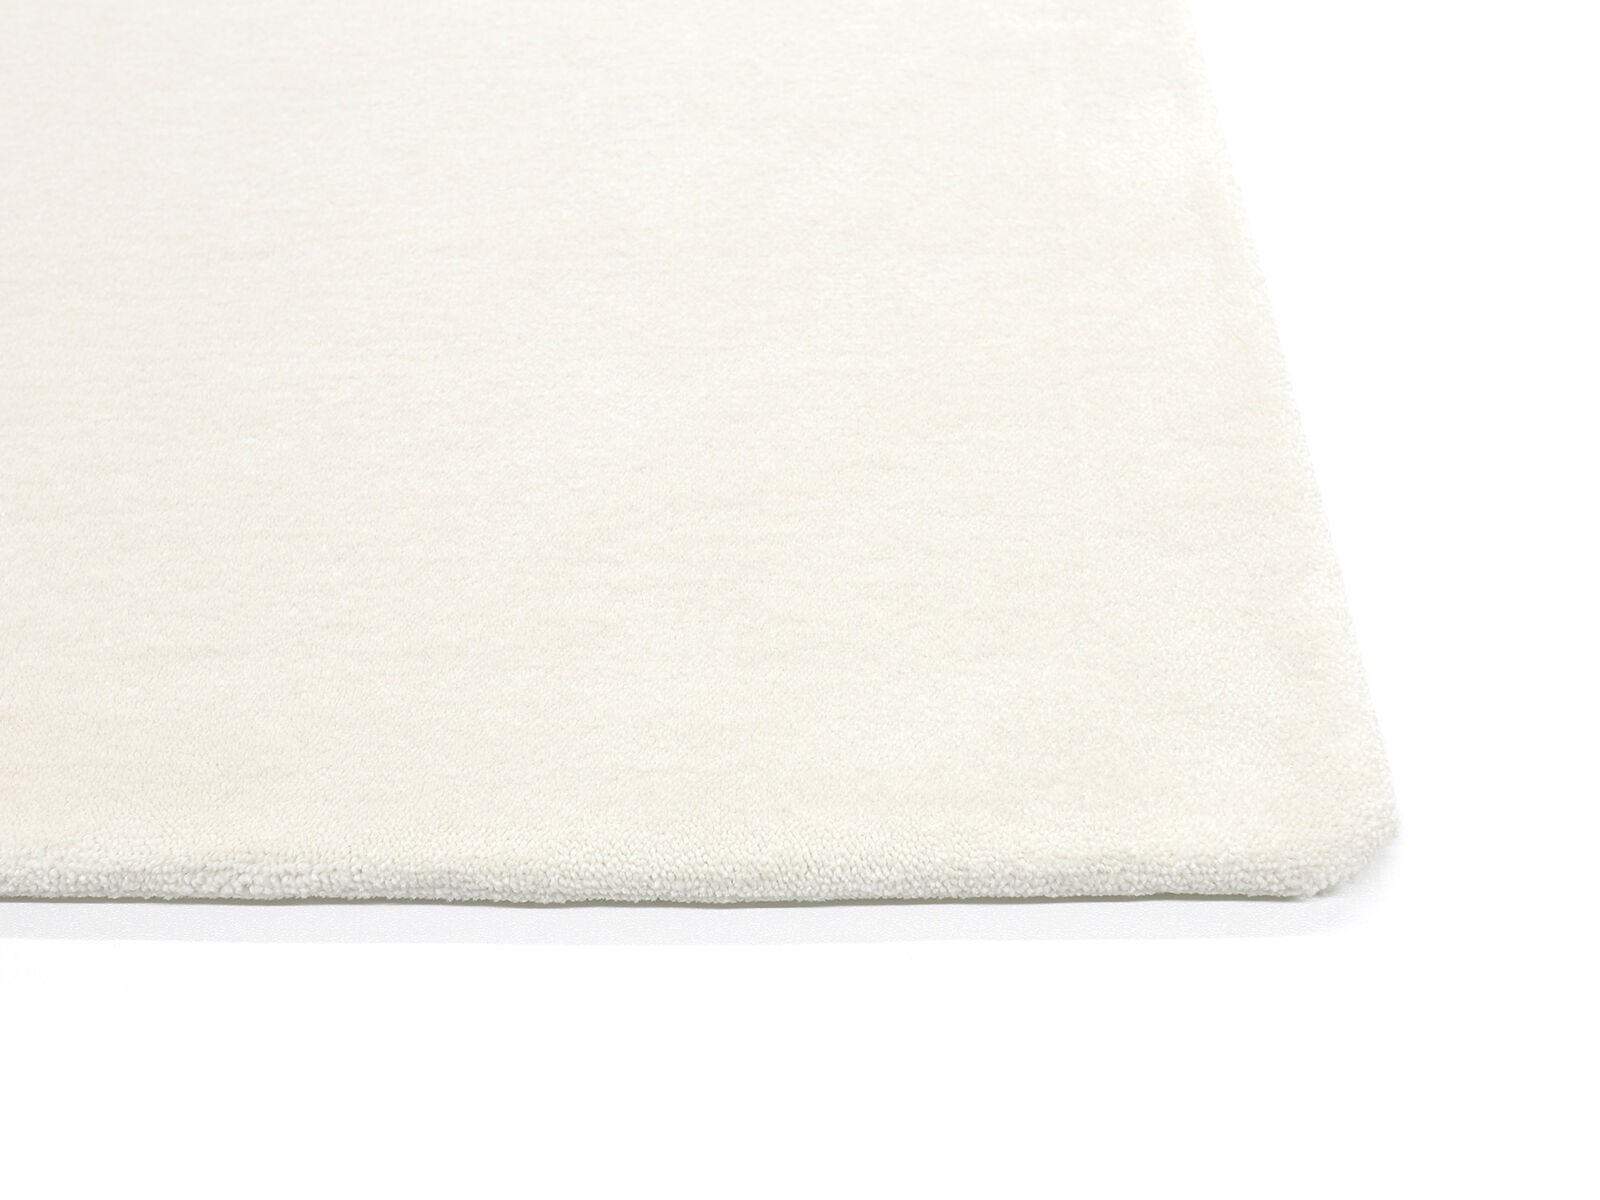 Teppich Anti-Slip / Antirutschmatte / Teppichunterlage - 100 Weiß